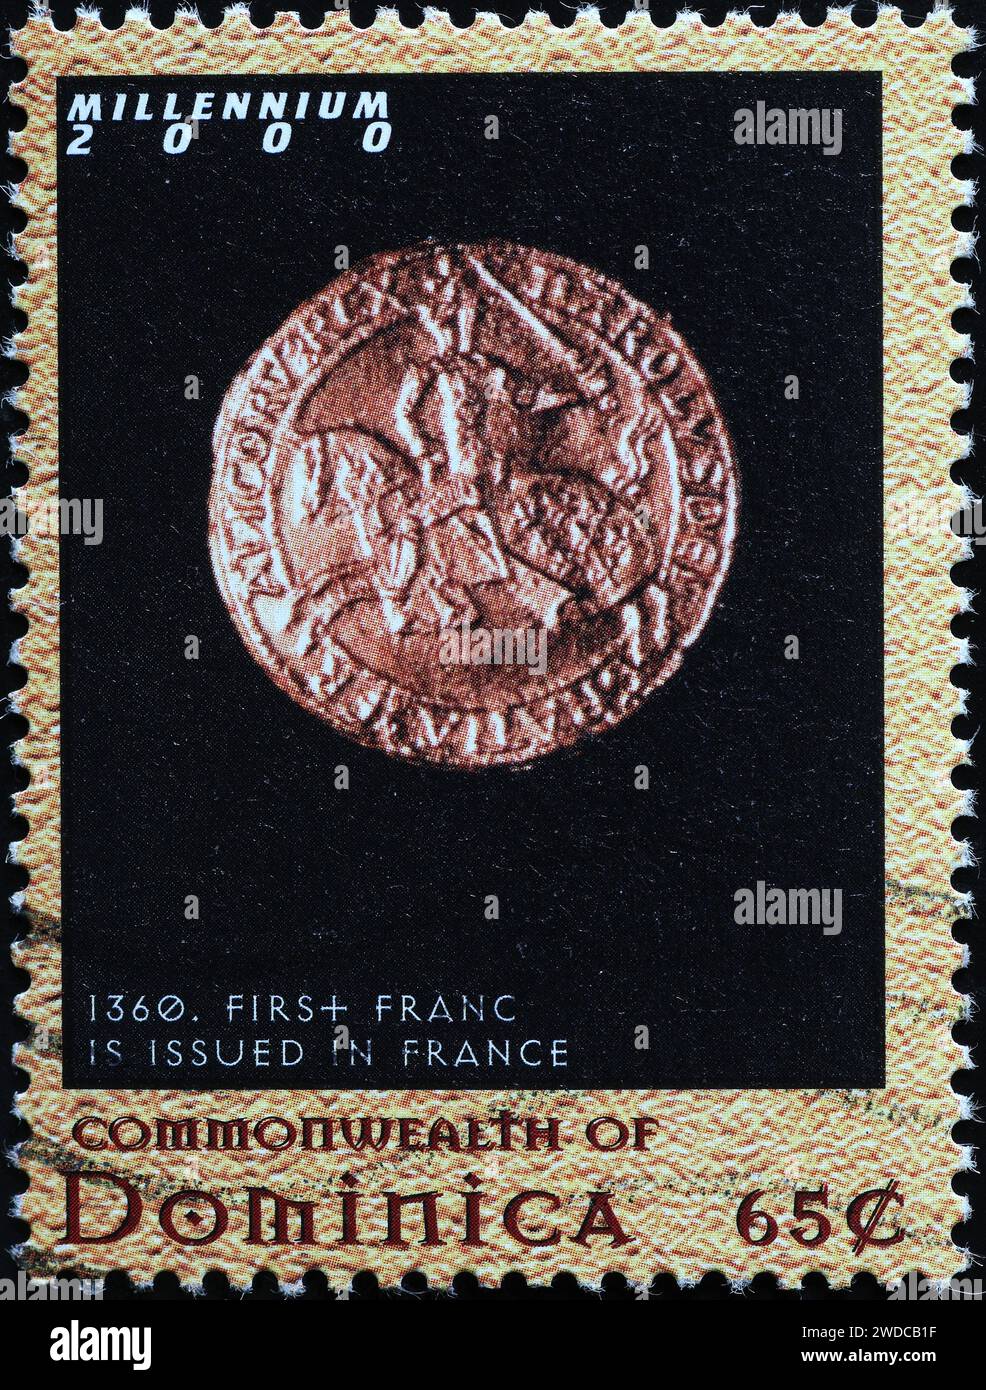 Primo franco francese emesso nel 1360 su francobollo Foto Stock